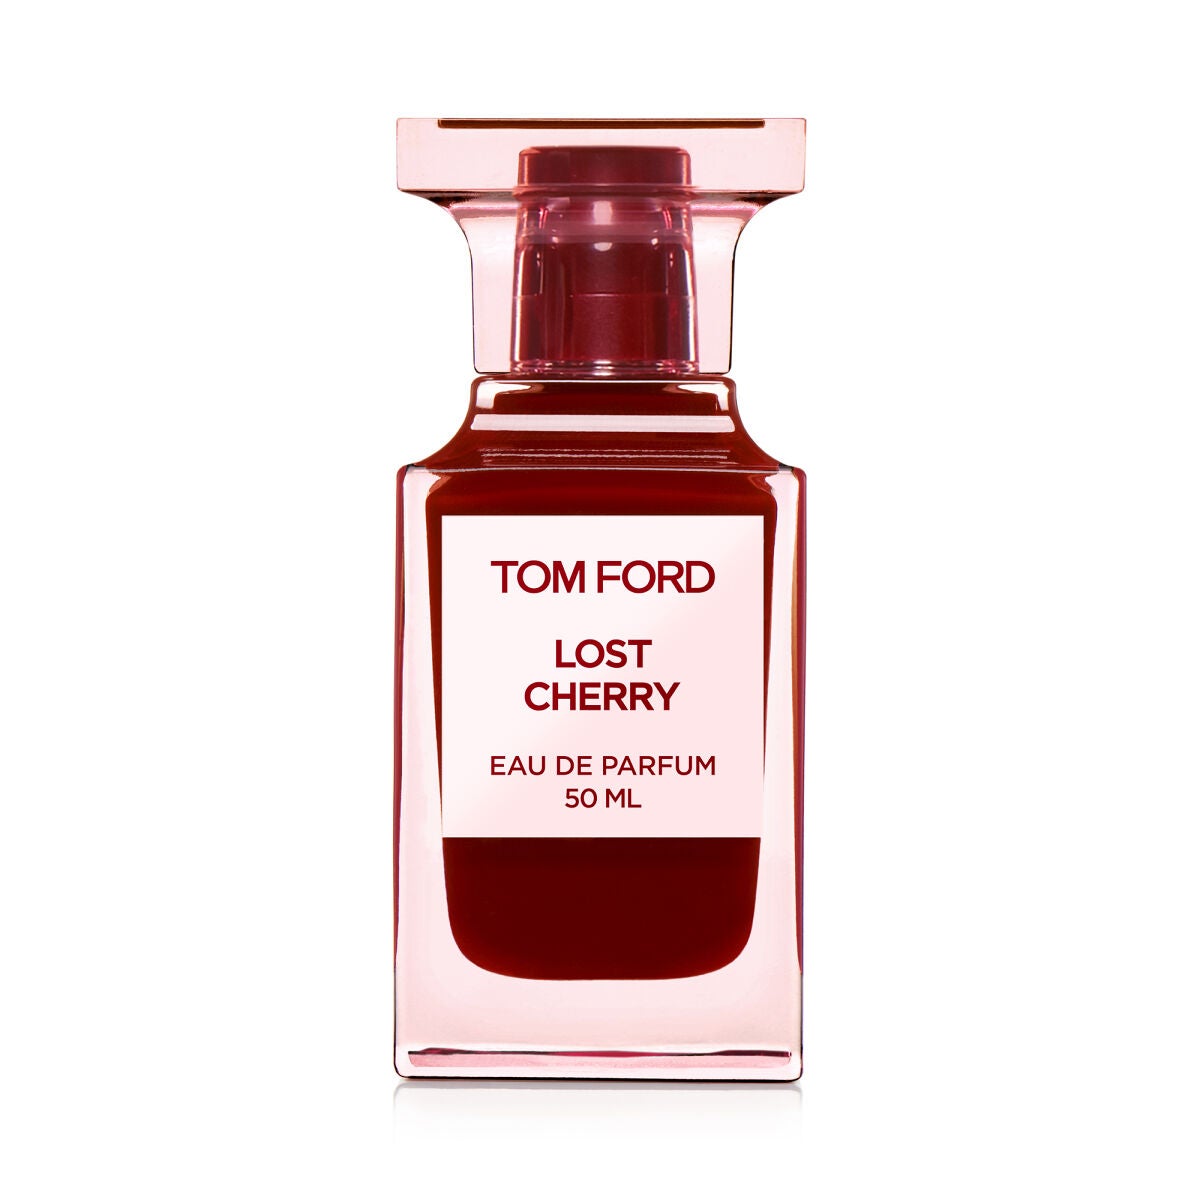 TOM FORD BEAUTY(トムフォードビューティ)の香水29選 | 人気商品から 